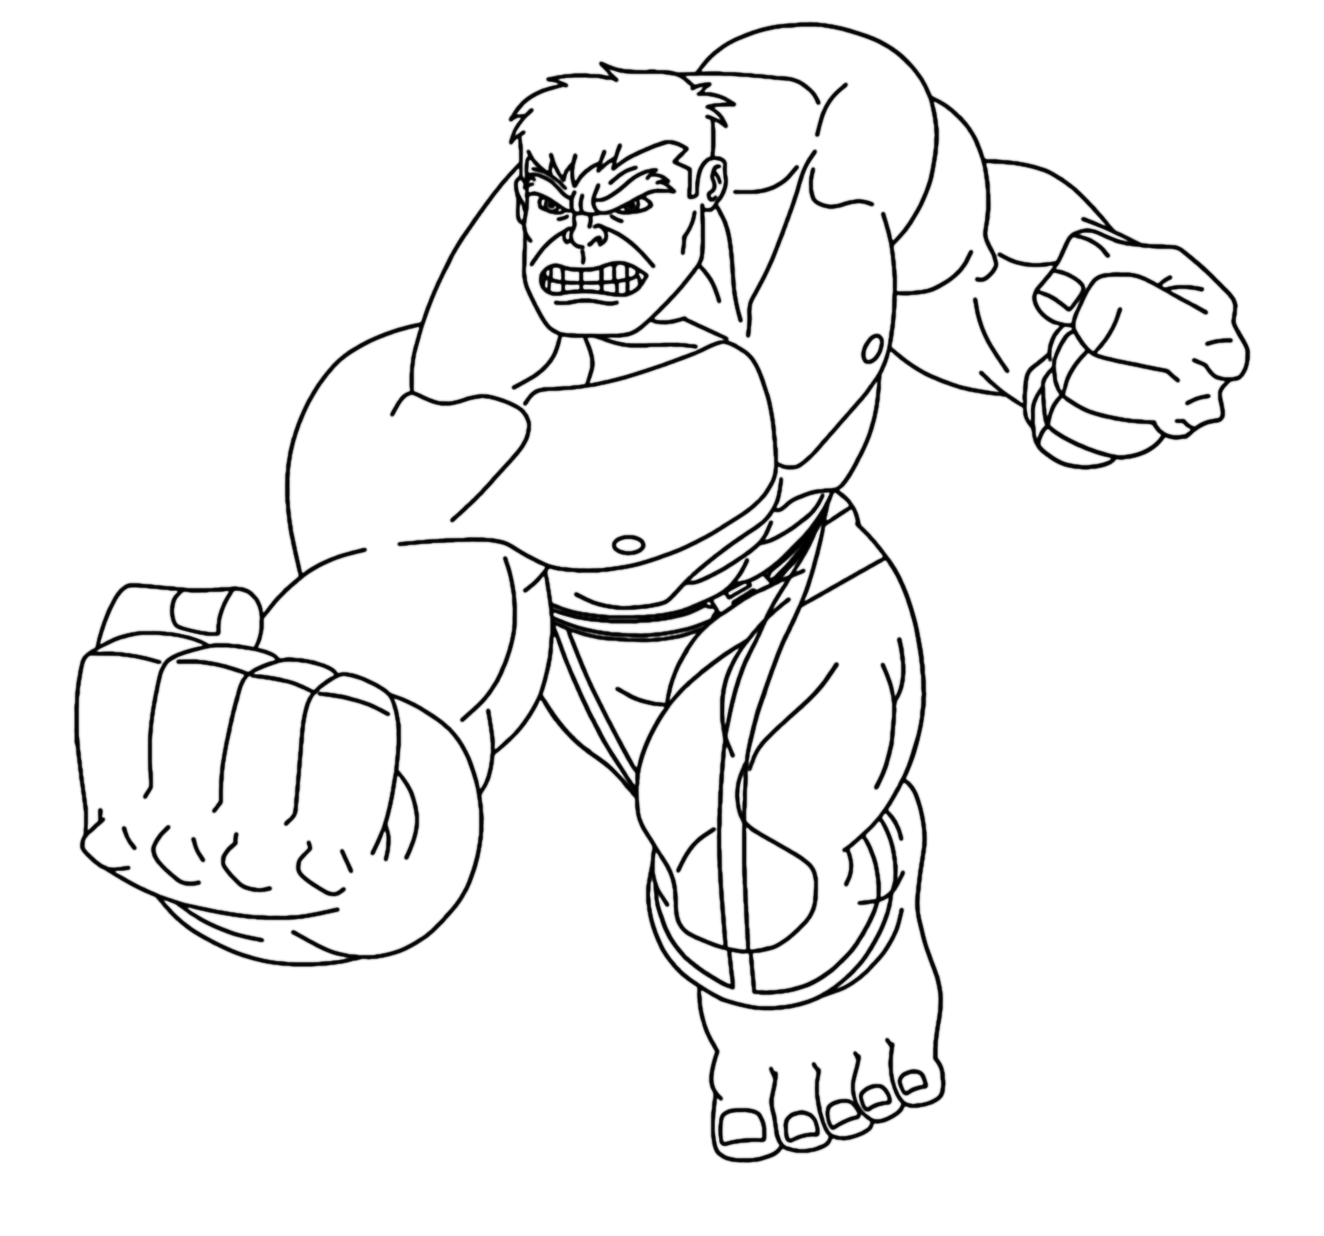 Desenho para colorir para imprimir do Hulk Os Vingadores